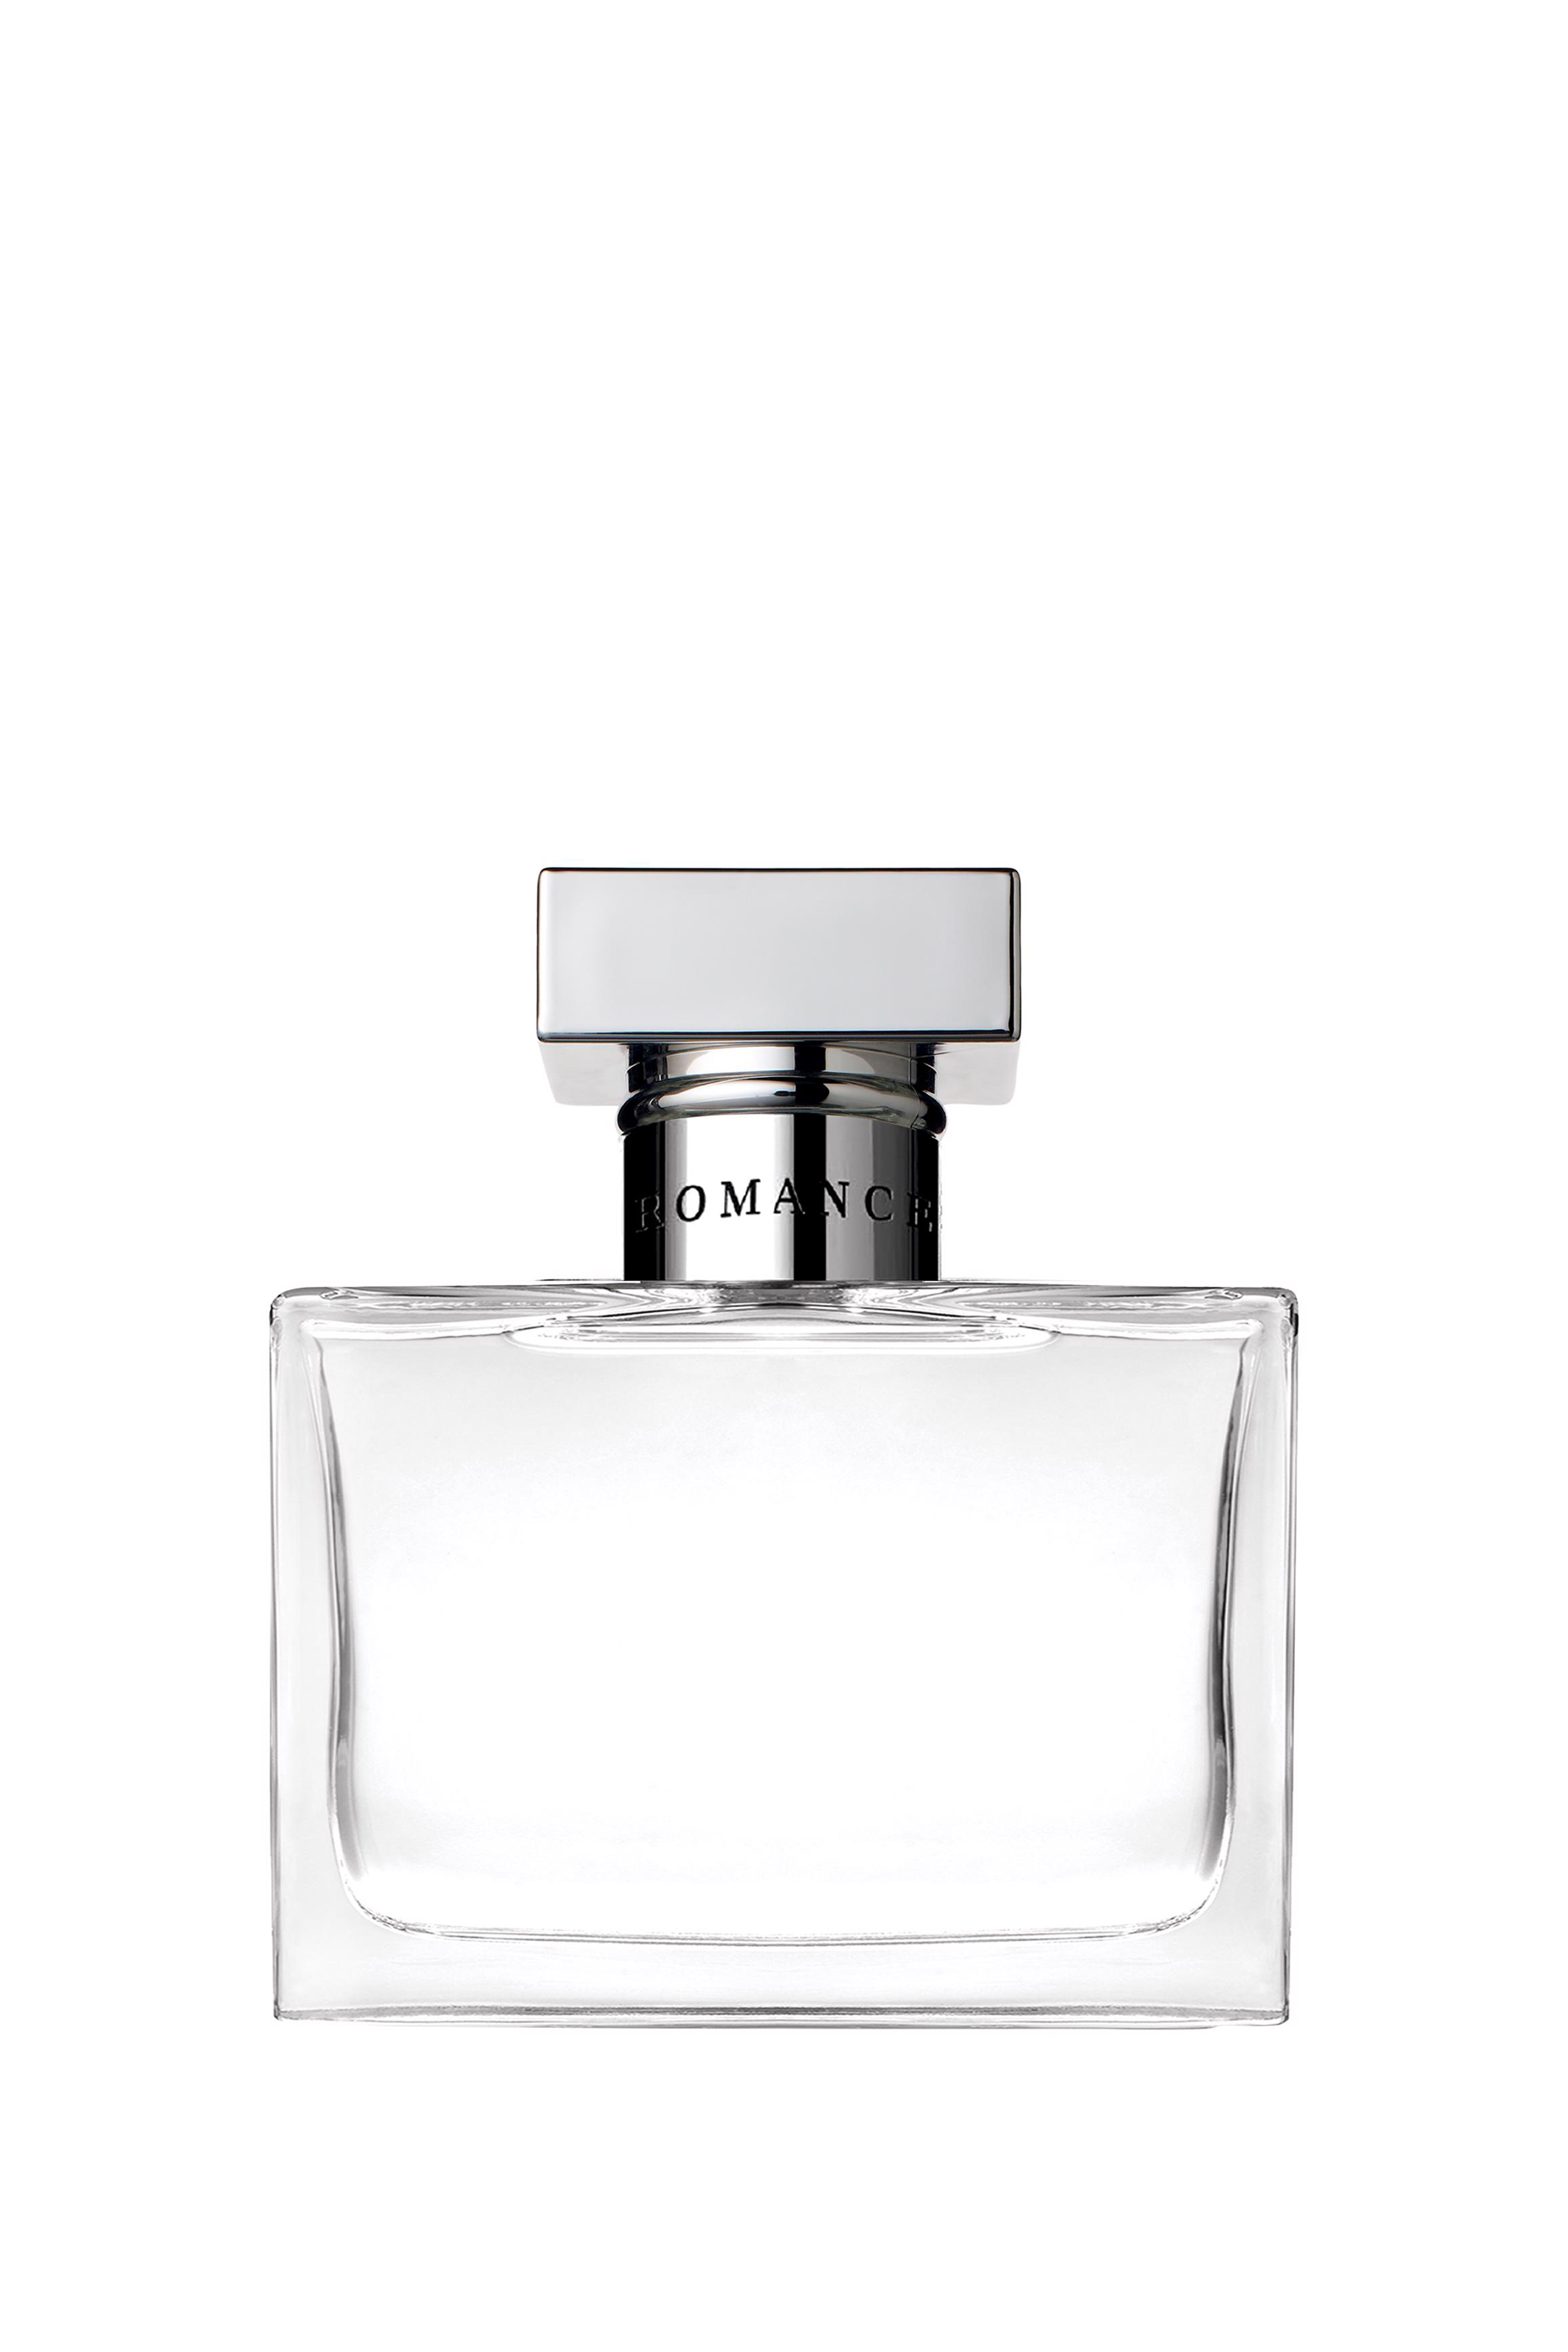 Buy Polo Ralph Lauren Romance Eau de Parfum for Womens | Bloomingdale's KSA